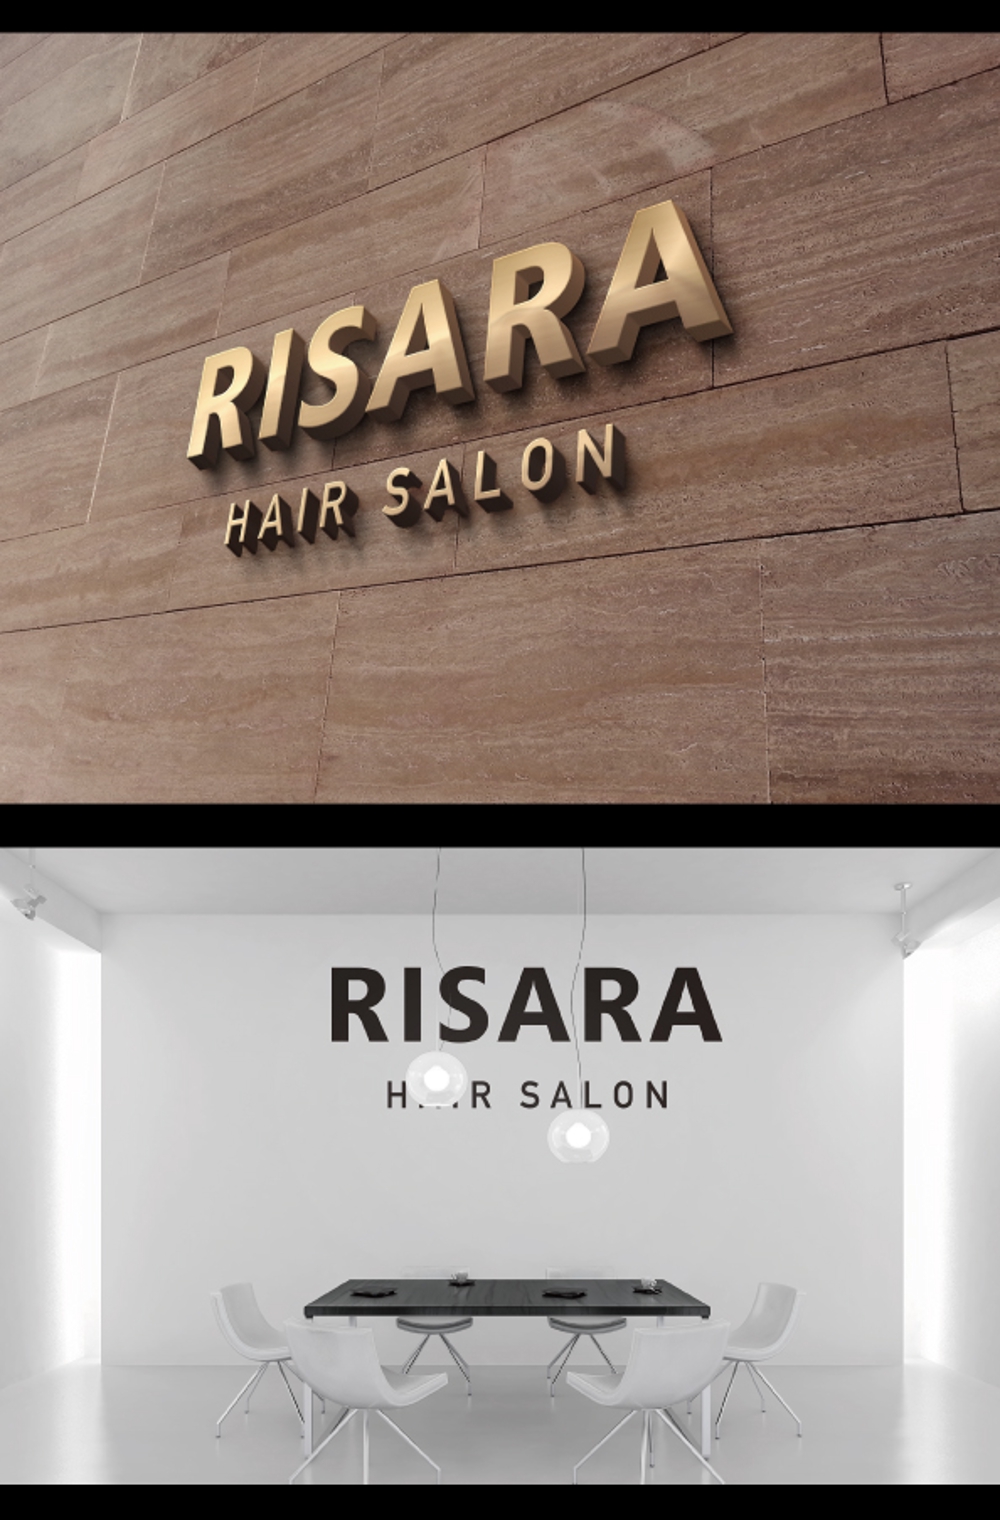 ★★☆☆　HAIR　SALON　RISARA　のロゴ大募集　☆☆★★